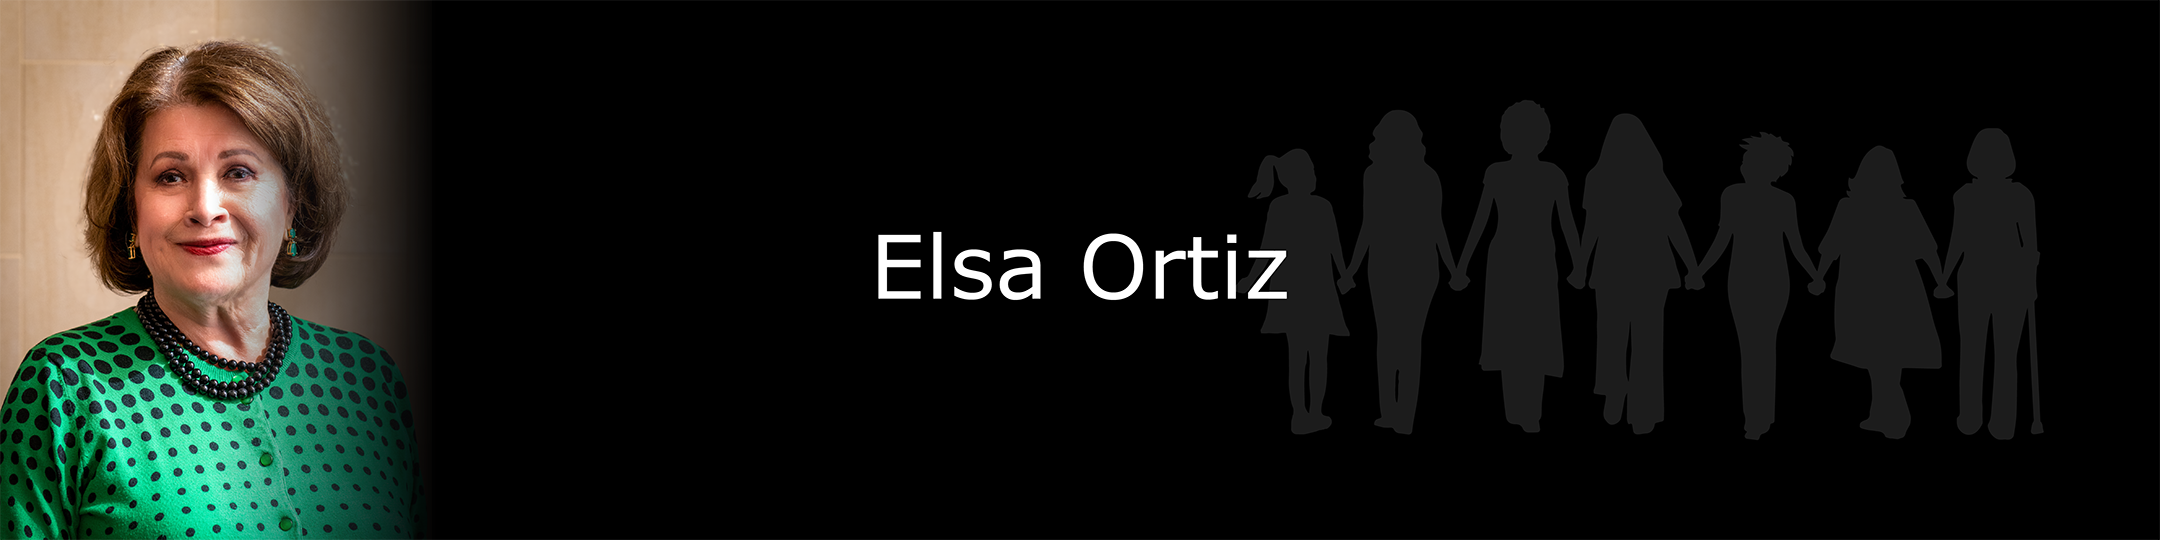 Photo of Elsa Ortiz.